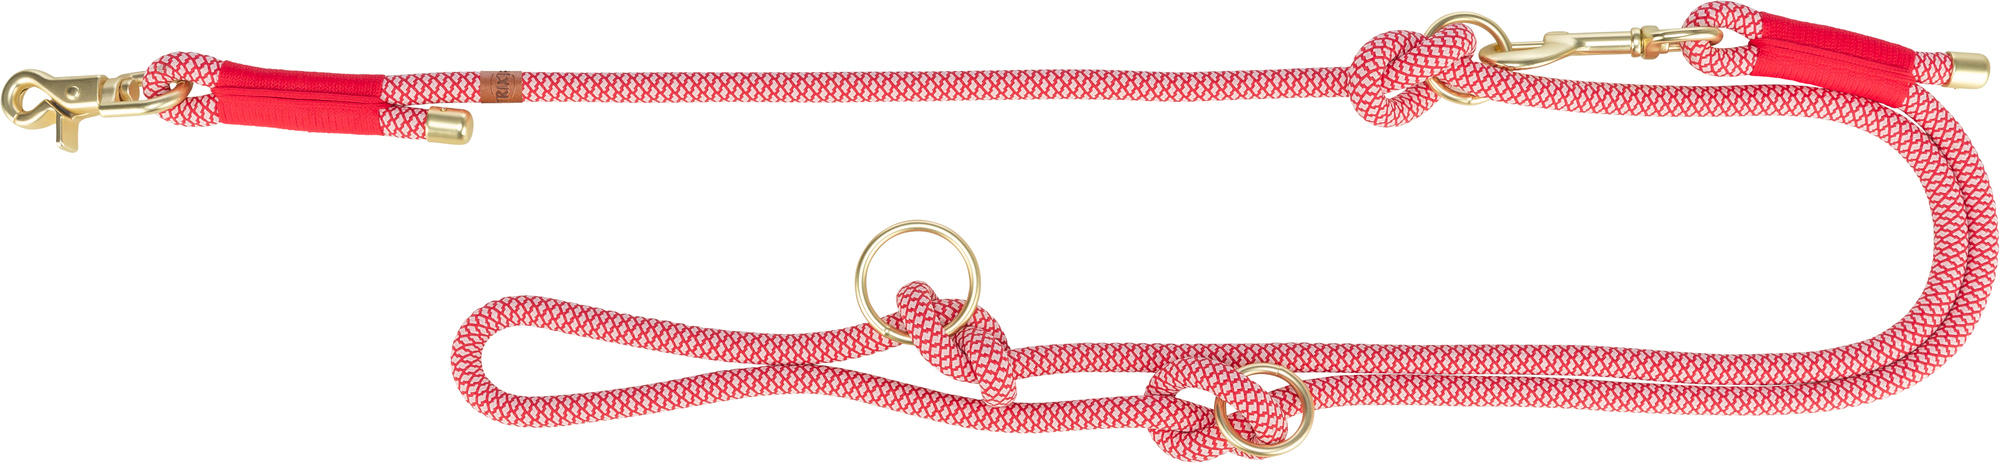 Laisse Soft Rope Trixie - 2m - plusieurs coloris disponibles